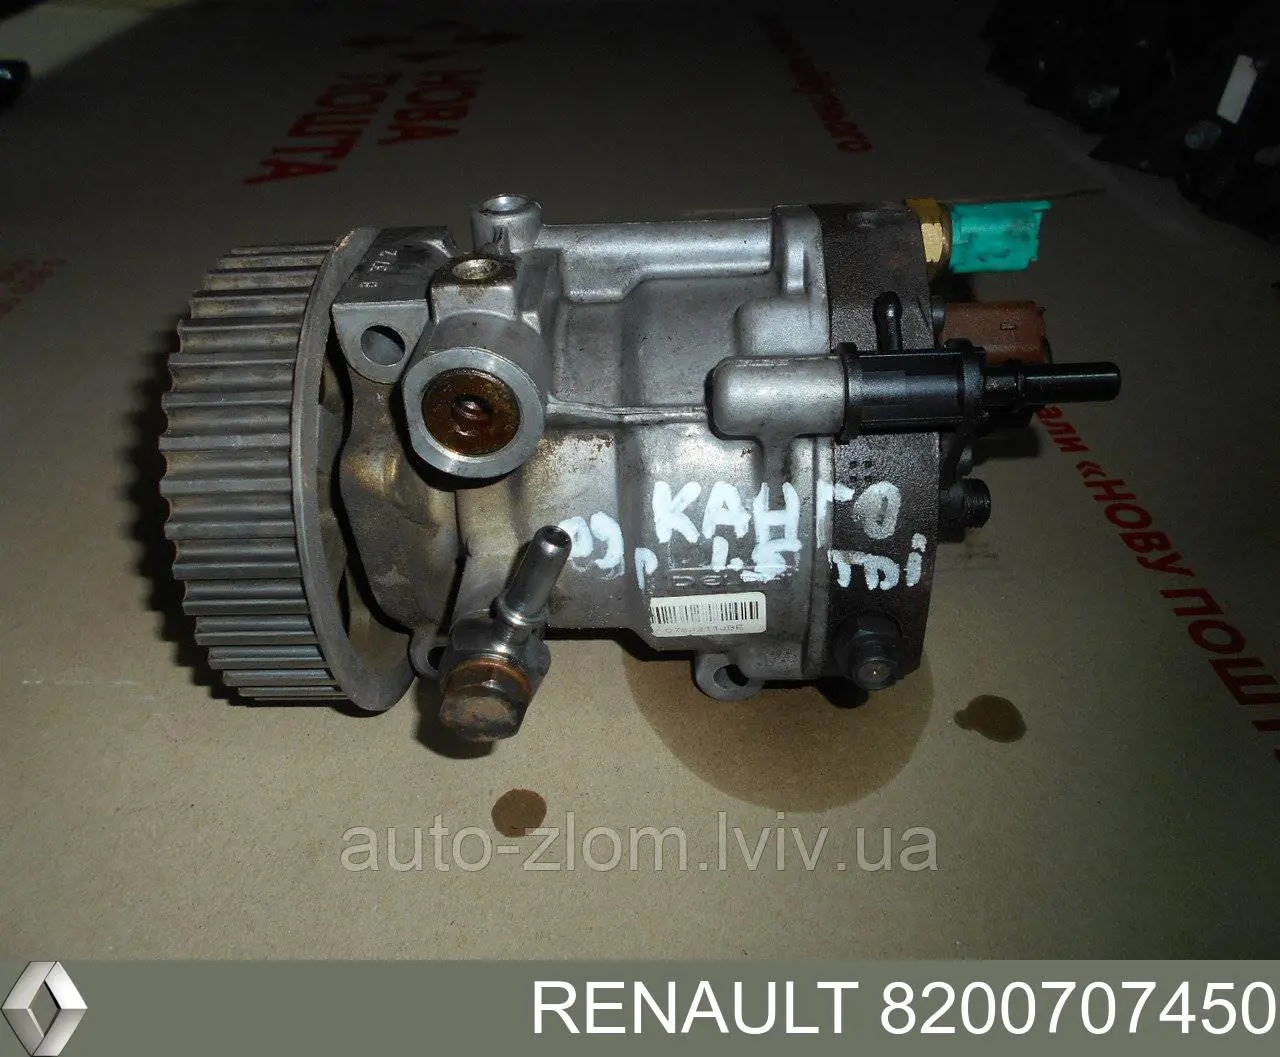 8200707450 Renault (RVI) насос топливный высокого давления (тнвд)